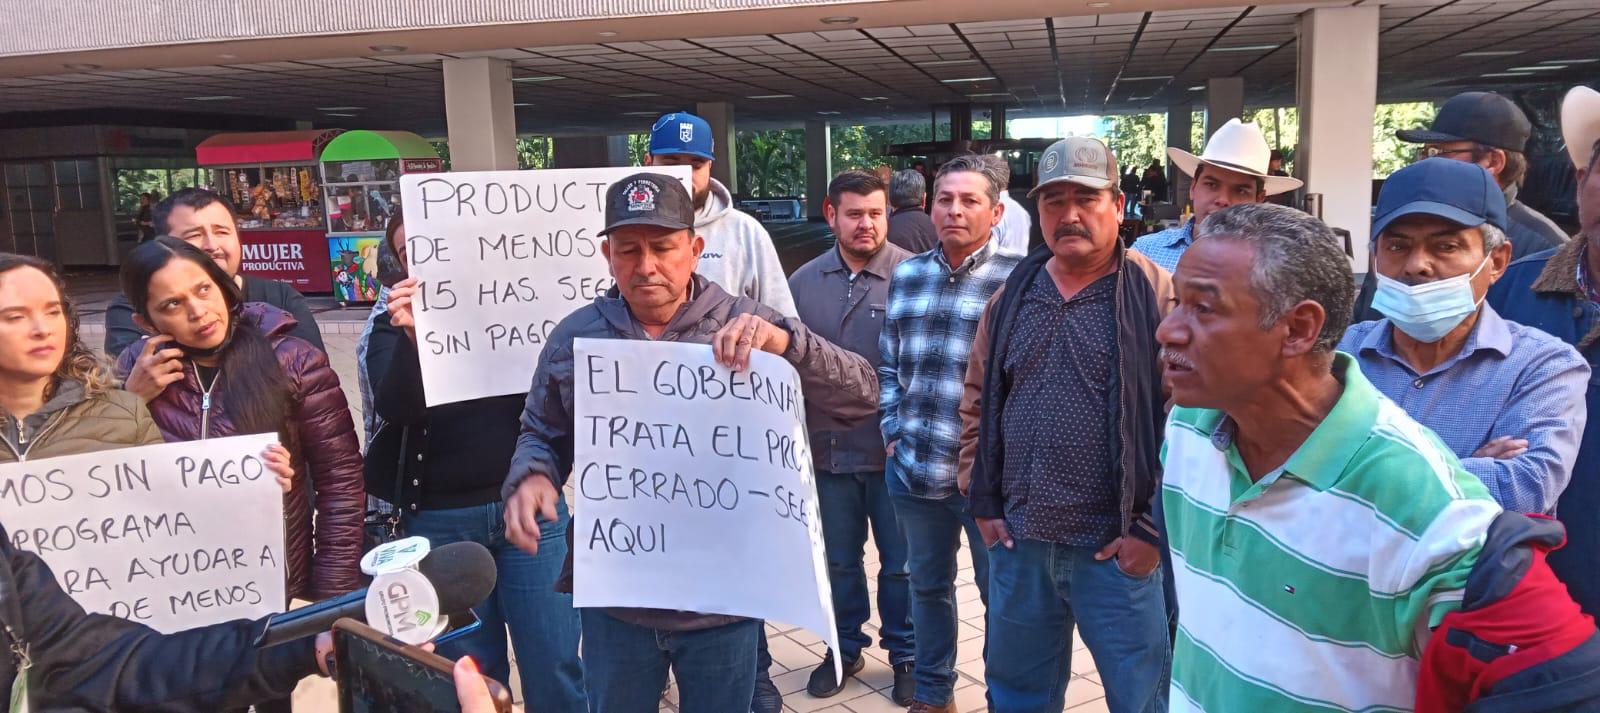 $!Productores de menos 10 hectáreas se manifiestan en el Palacio de Gobierno de Sinaloa